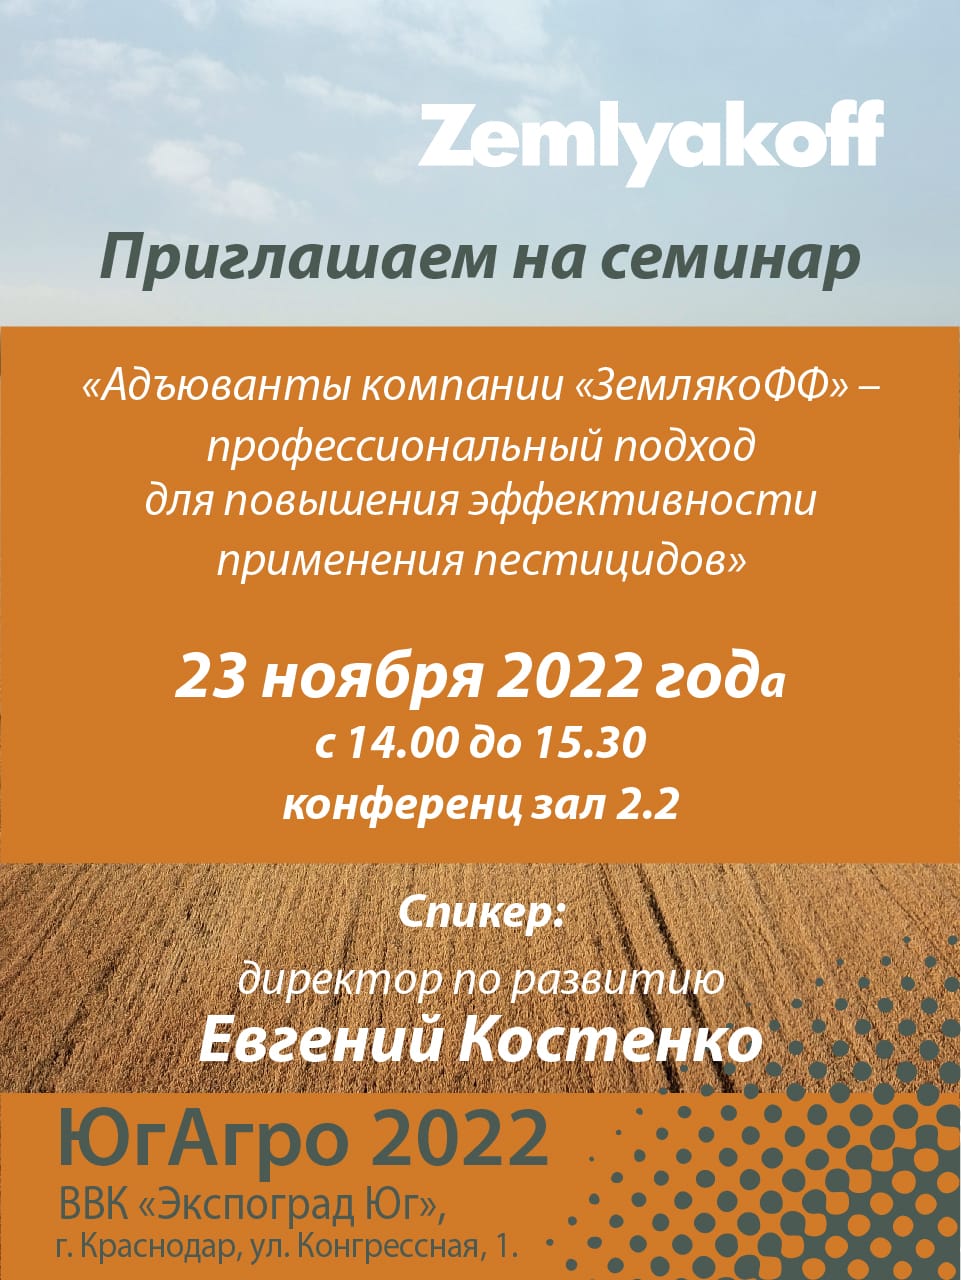 Приглашаем на выставку "ЮГАГРО-2022"